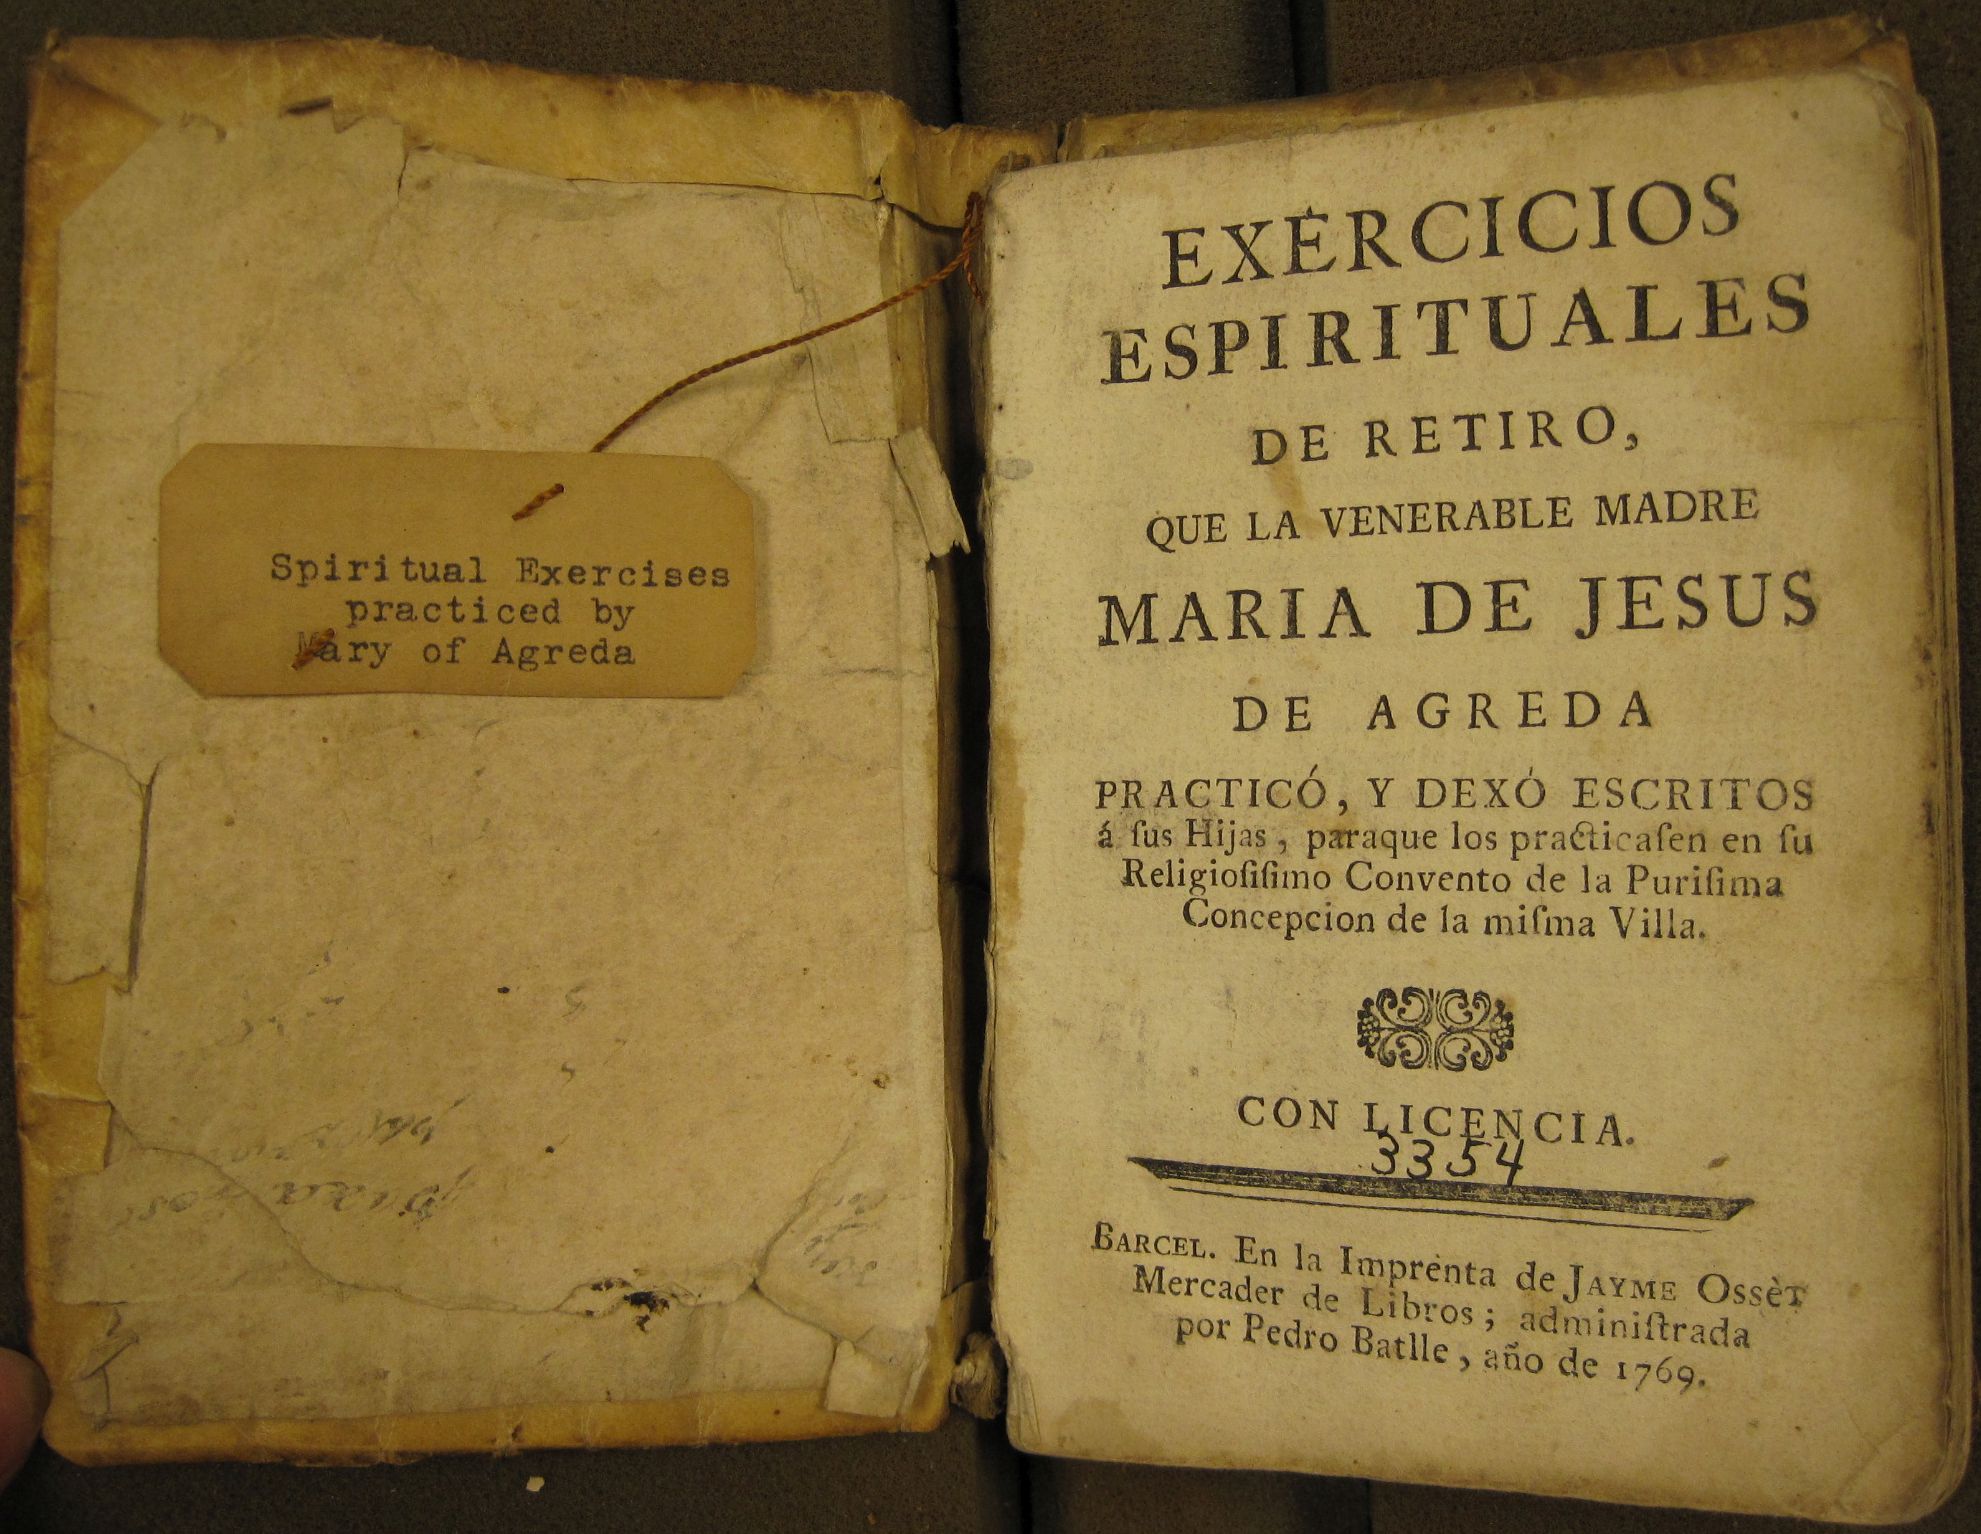 Mystery and Mysticism of María de Jesus de Ágreda (1602-1665)